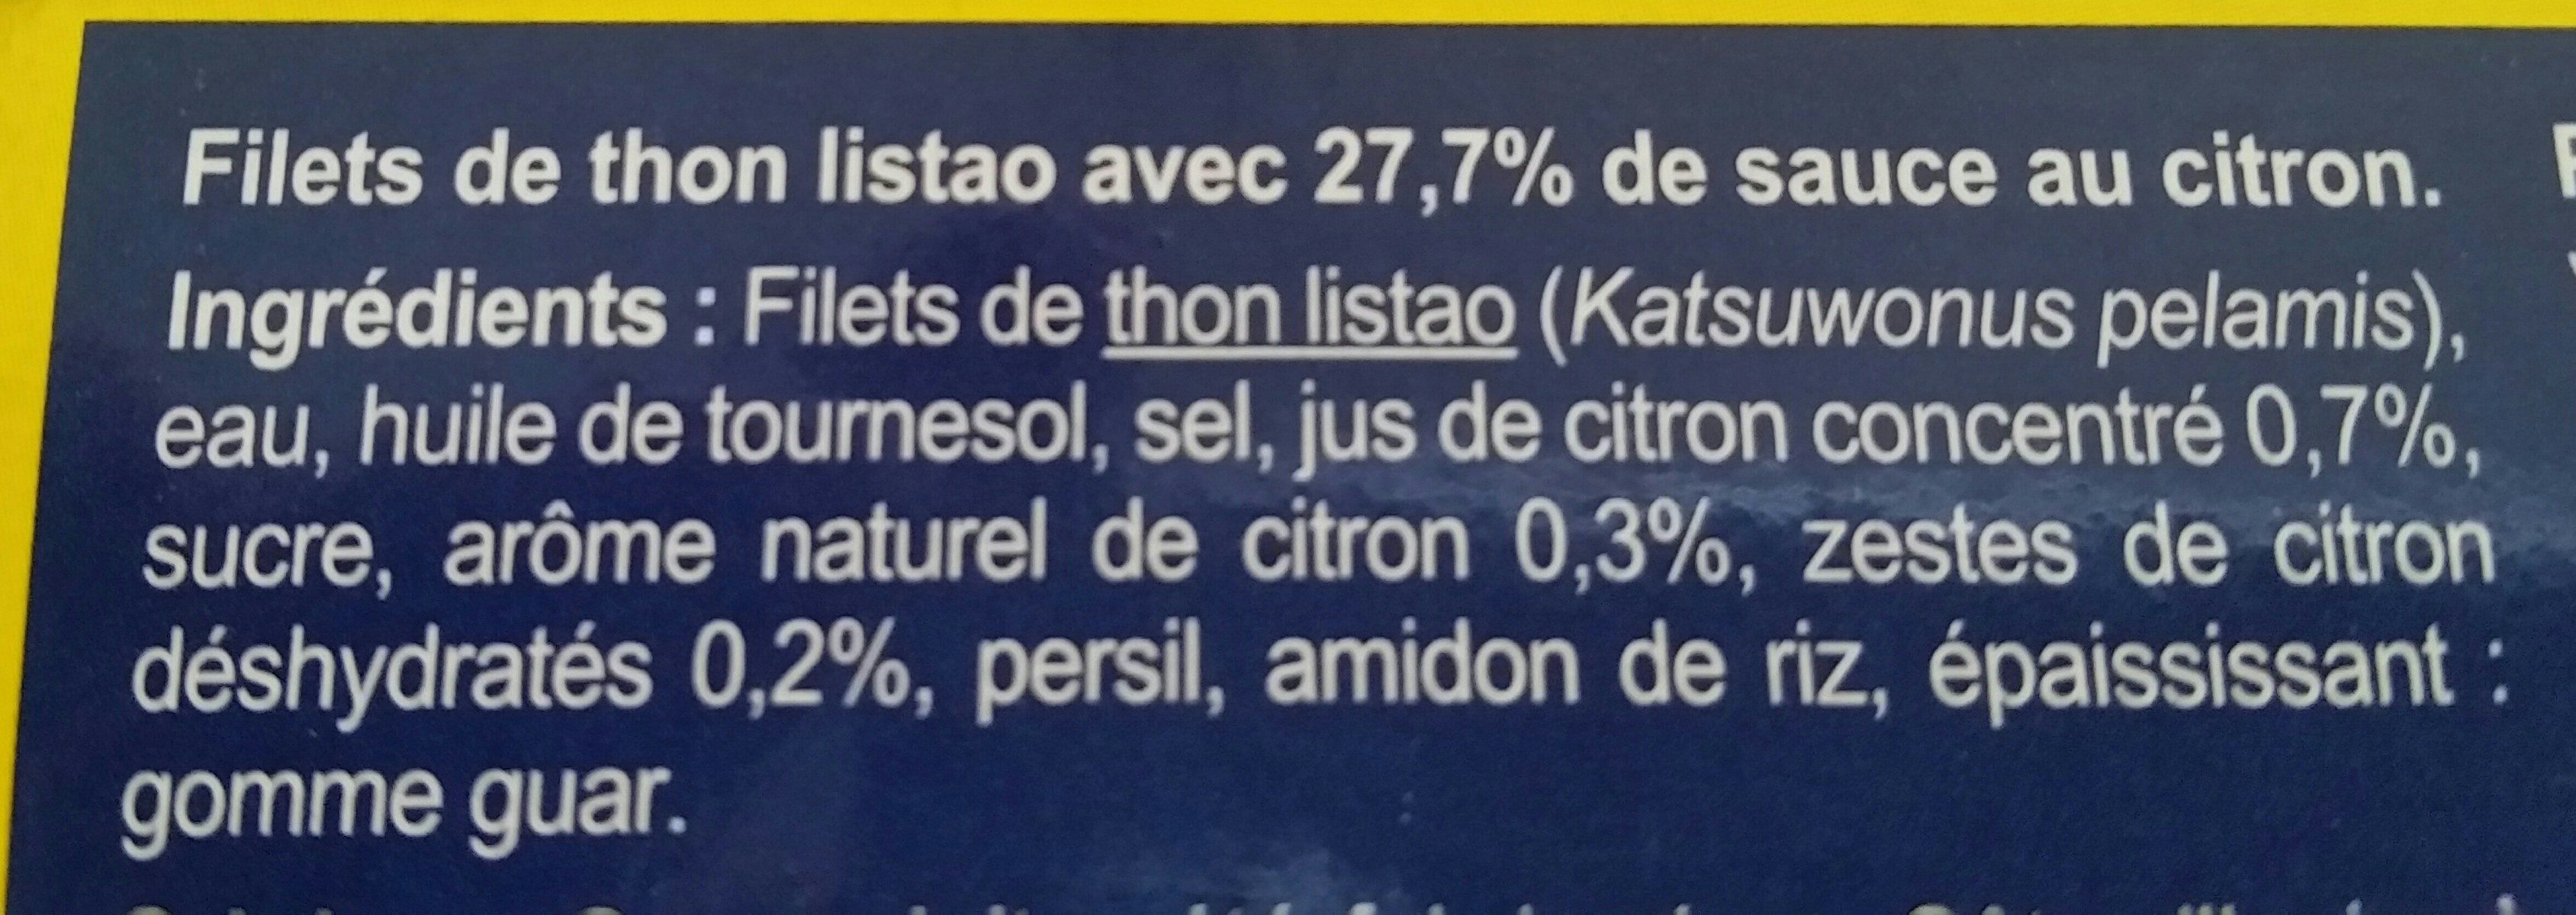 Filets de thon listeo au citron - Ingrédients - fr